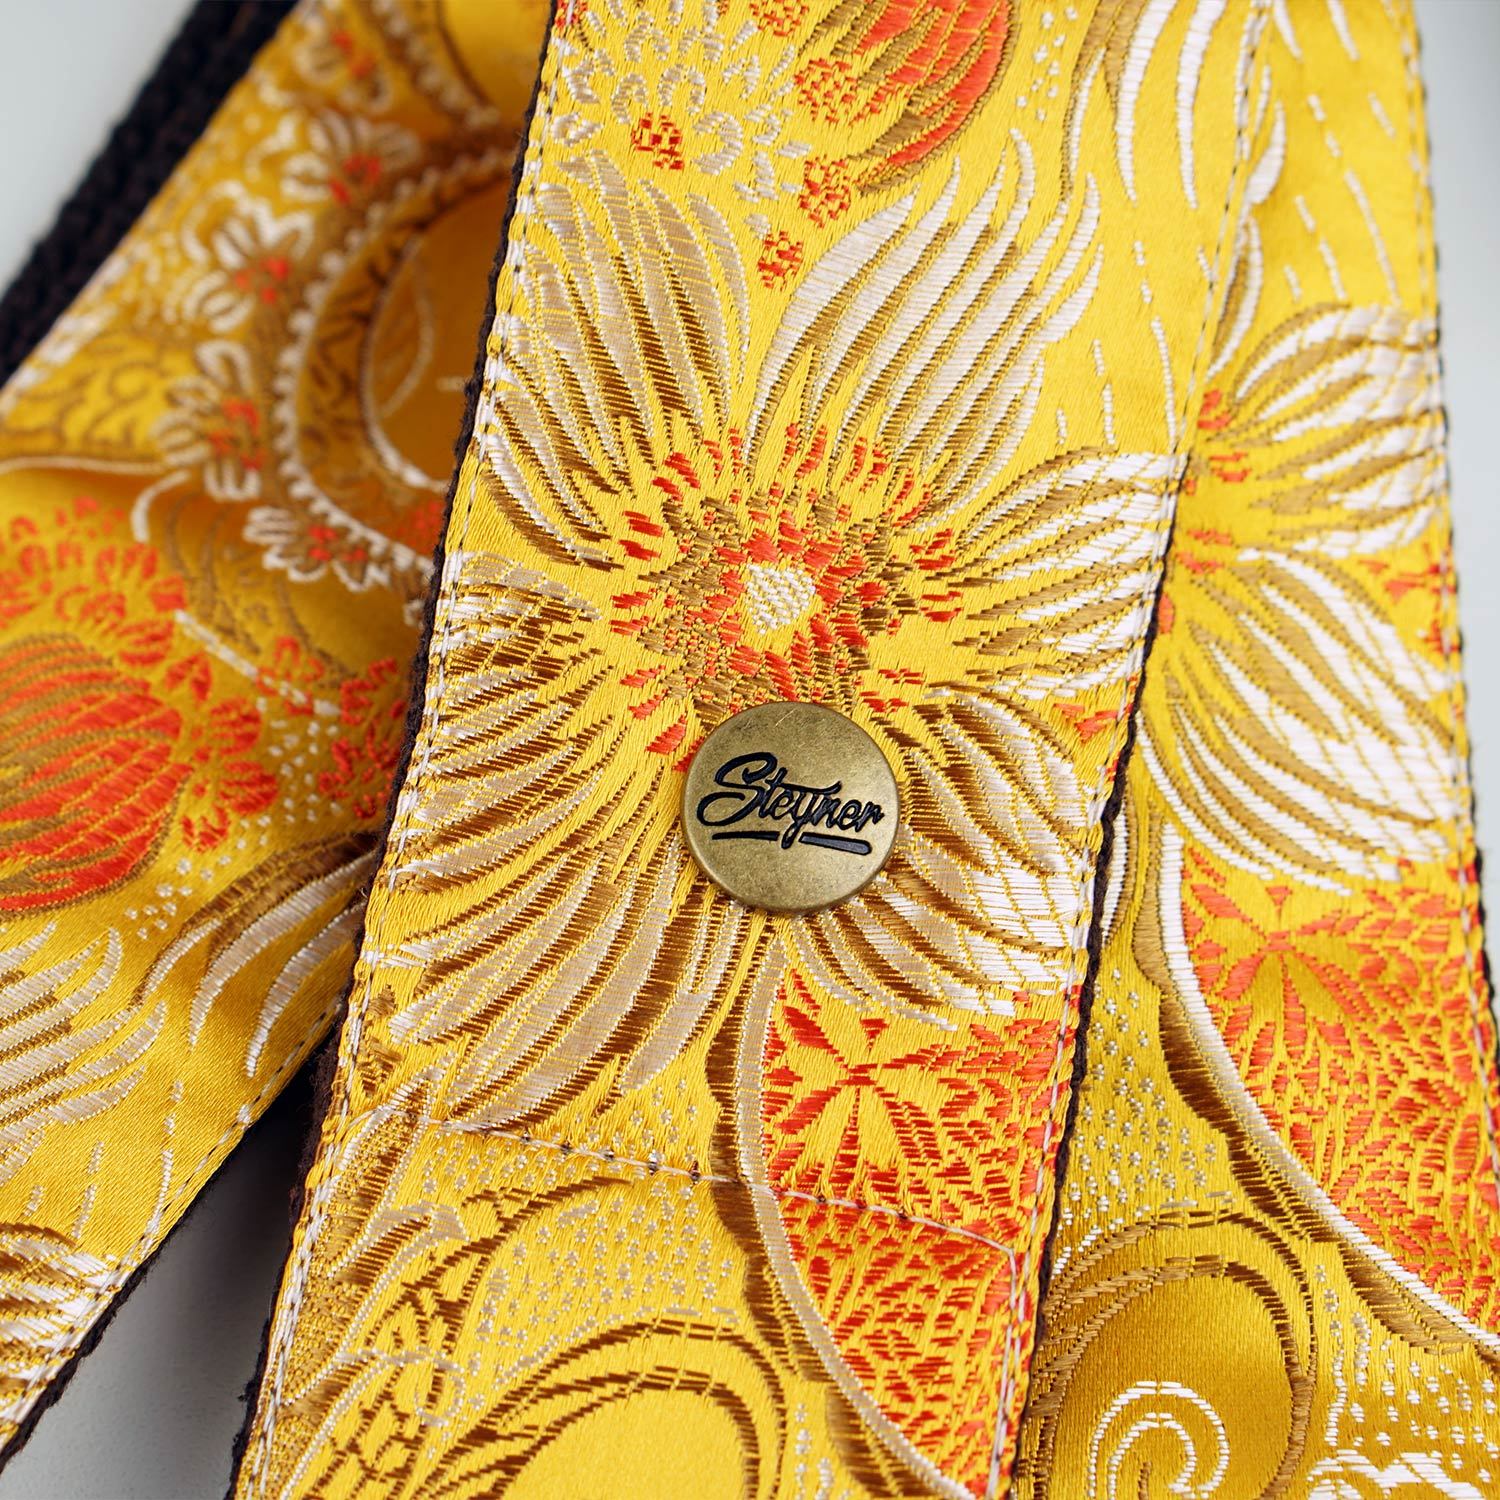 Gitarrengurt gelb mit Blumen Muster bunt - Detailaufnahme mit Marken Logo